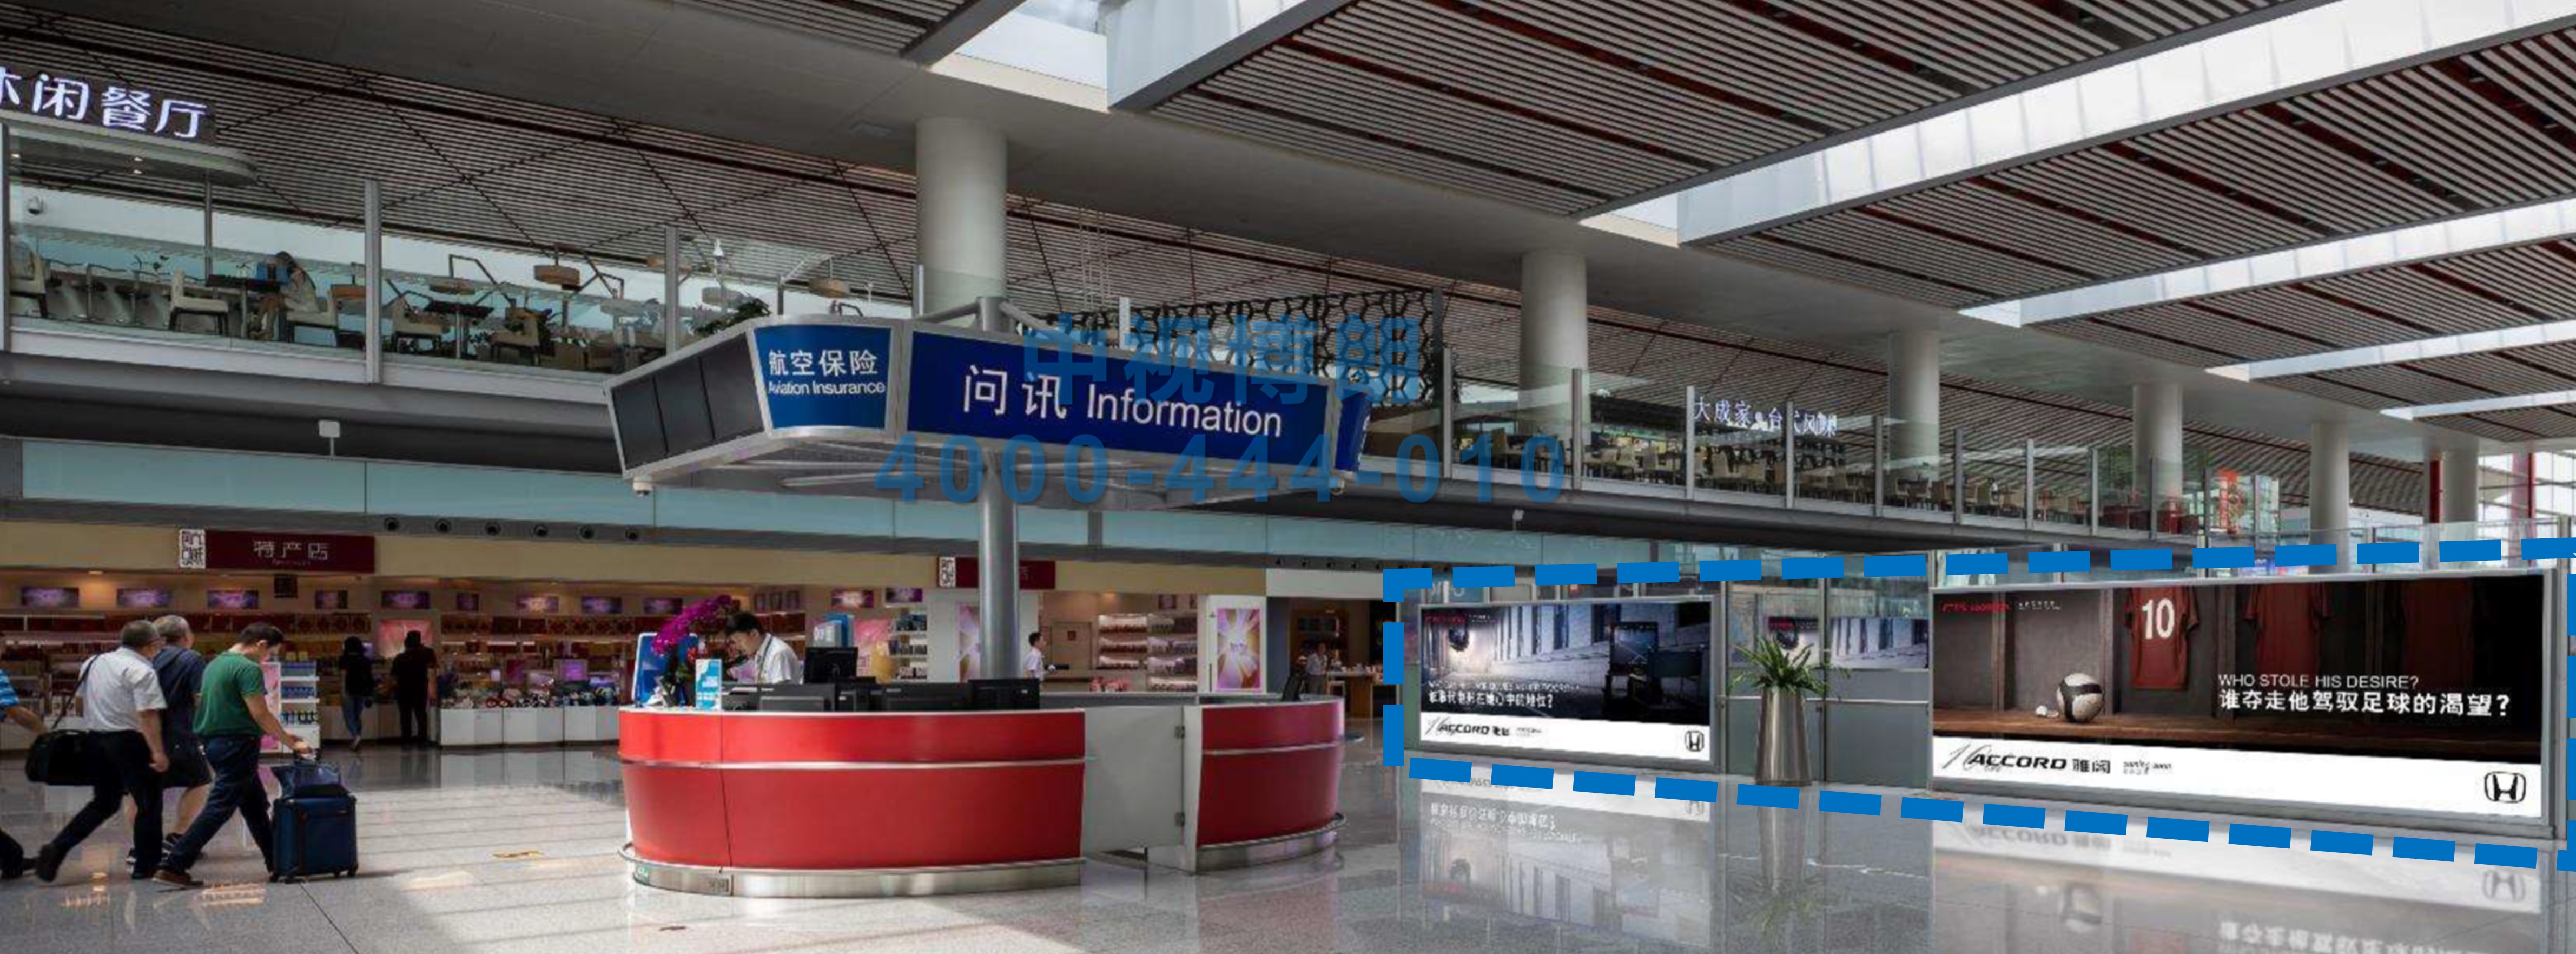 北京首都机场广告-T3候机区落地灯箱D021